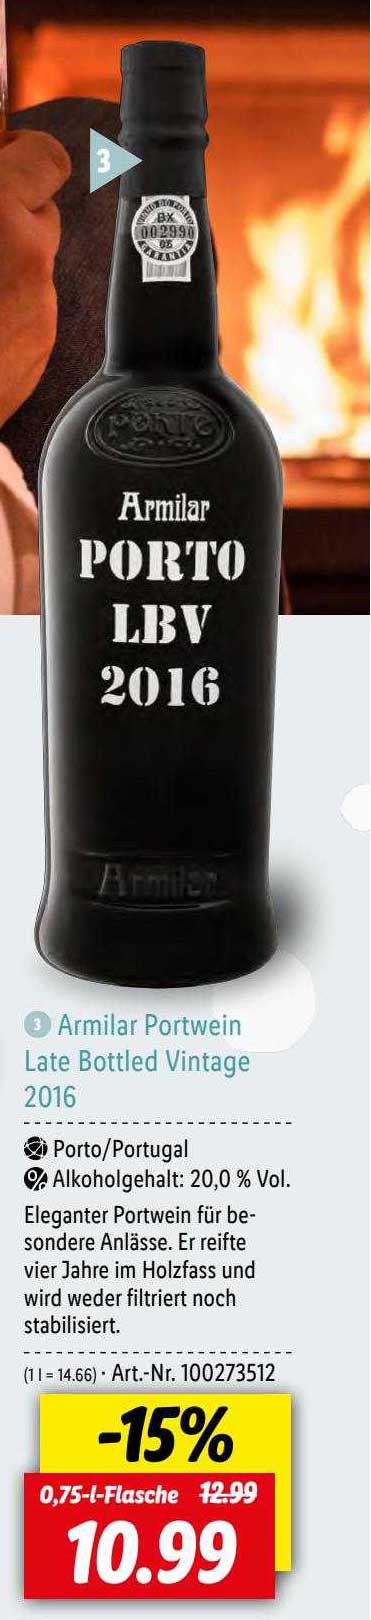 Armilar Portwein Late Bottled Lidl Angebot 2016 Vintage bei